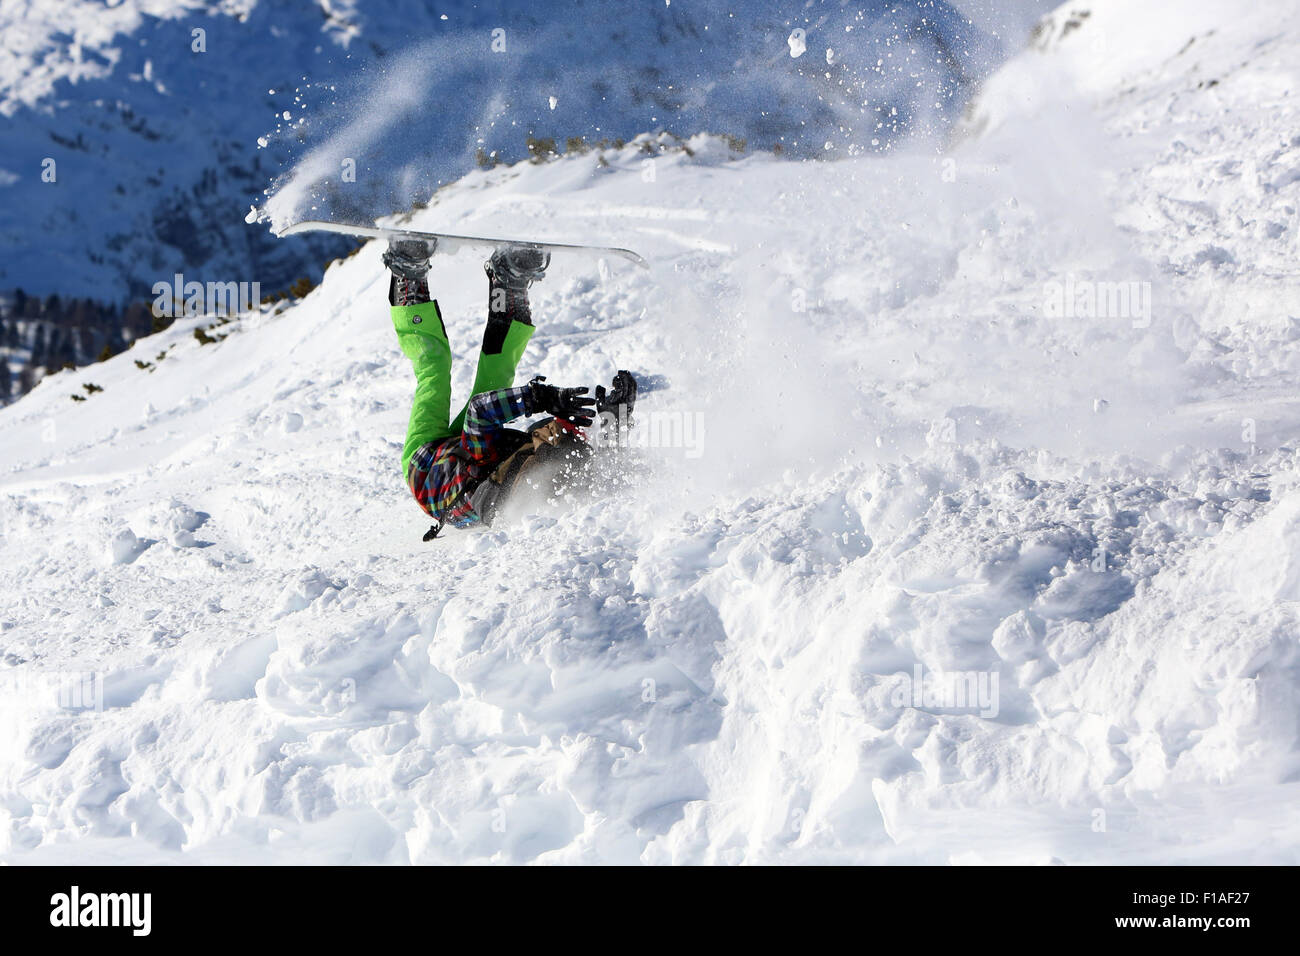 Krippenbrunn, Autriche, un garçon se bloque alors que le snowboard Banque D'Images